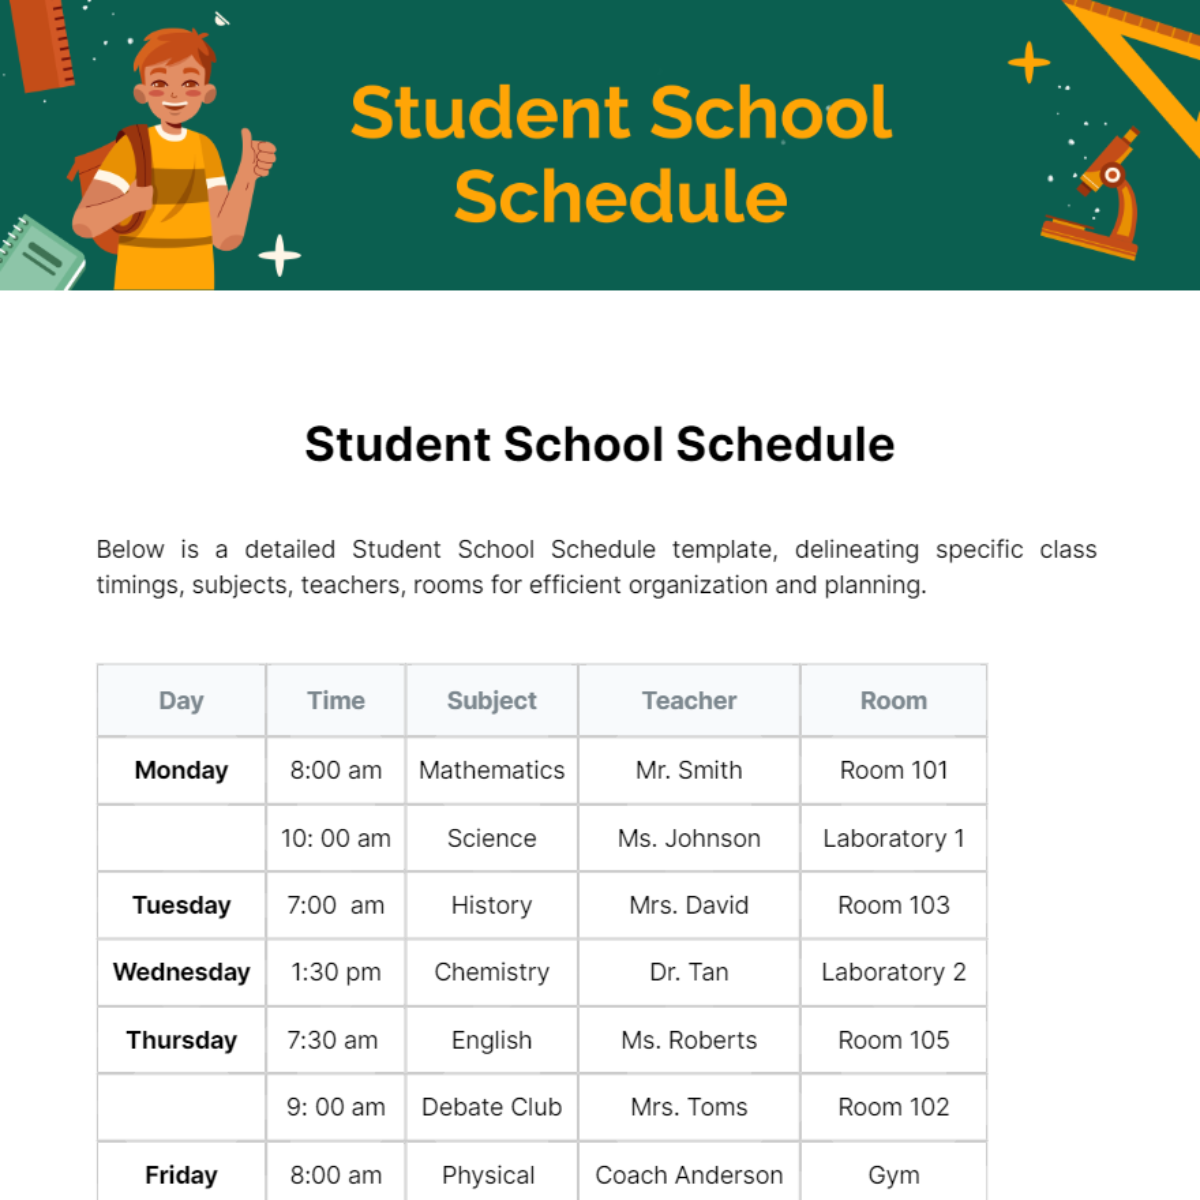 Student School Schedule Template